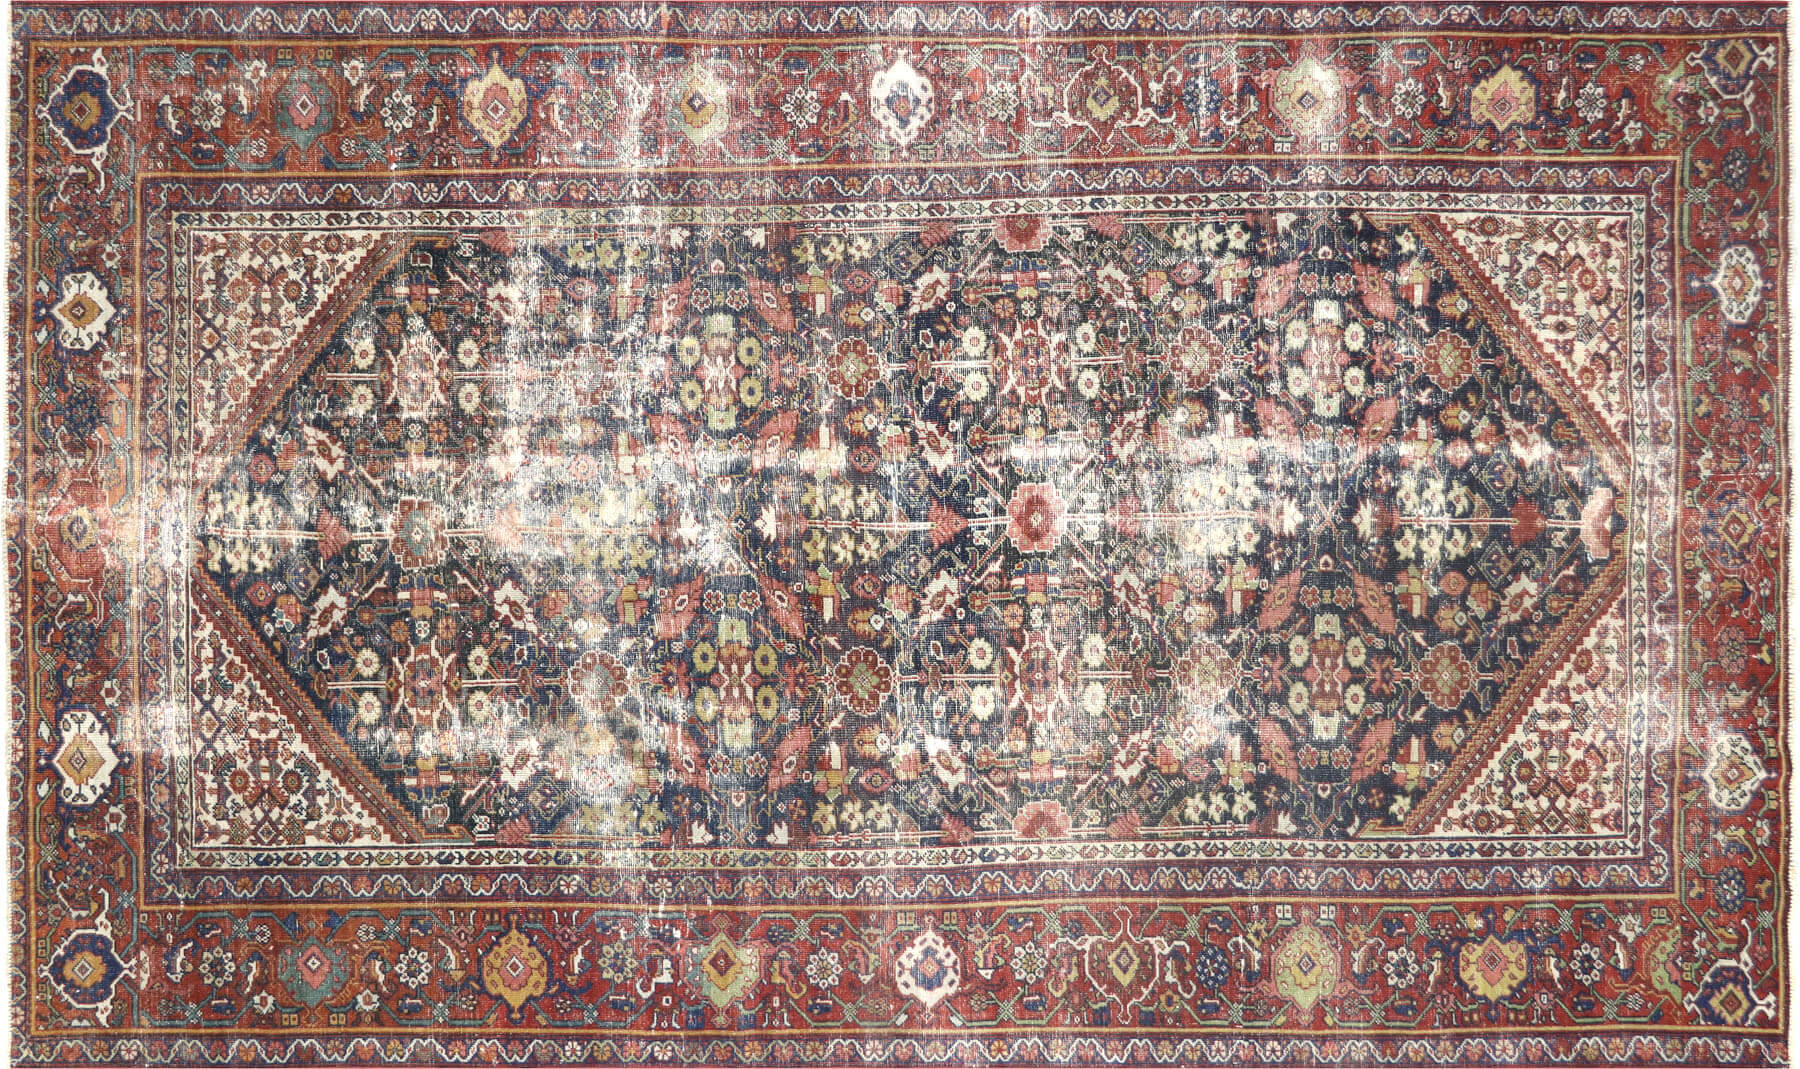 Semi Antique Persian Mahal Carpet - 6'4" x 10'7"